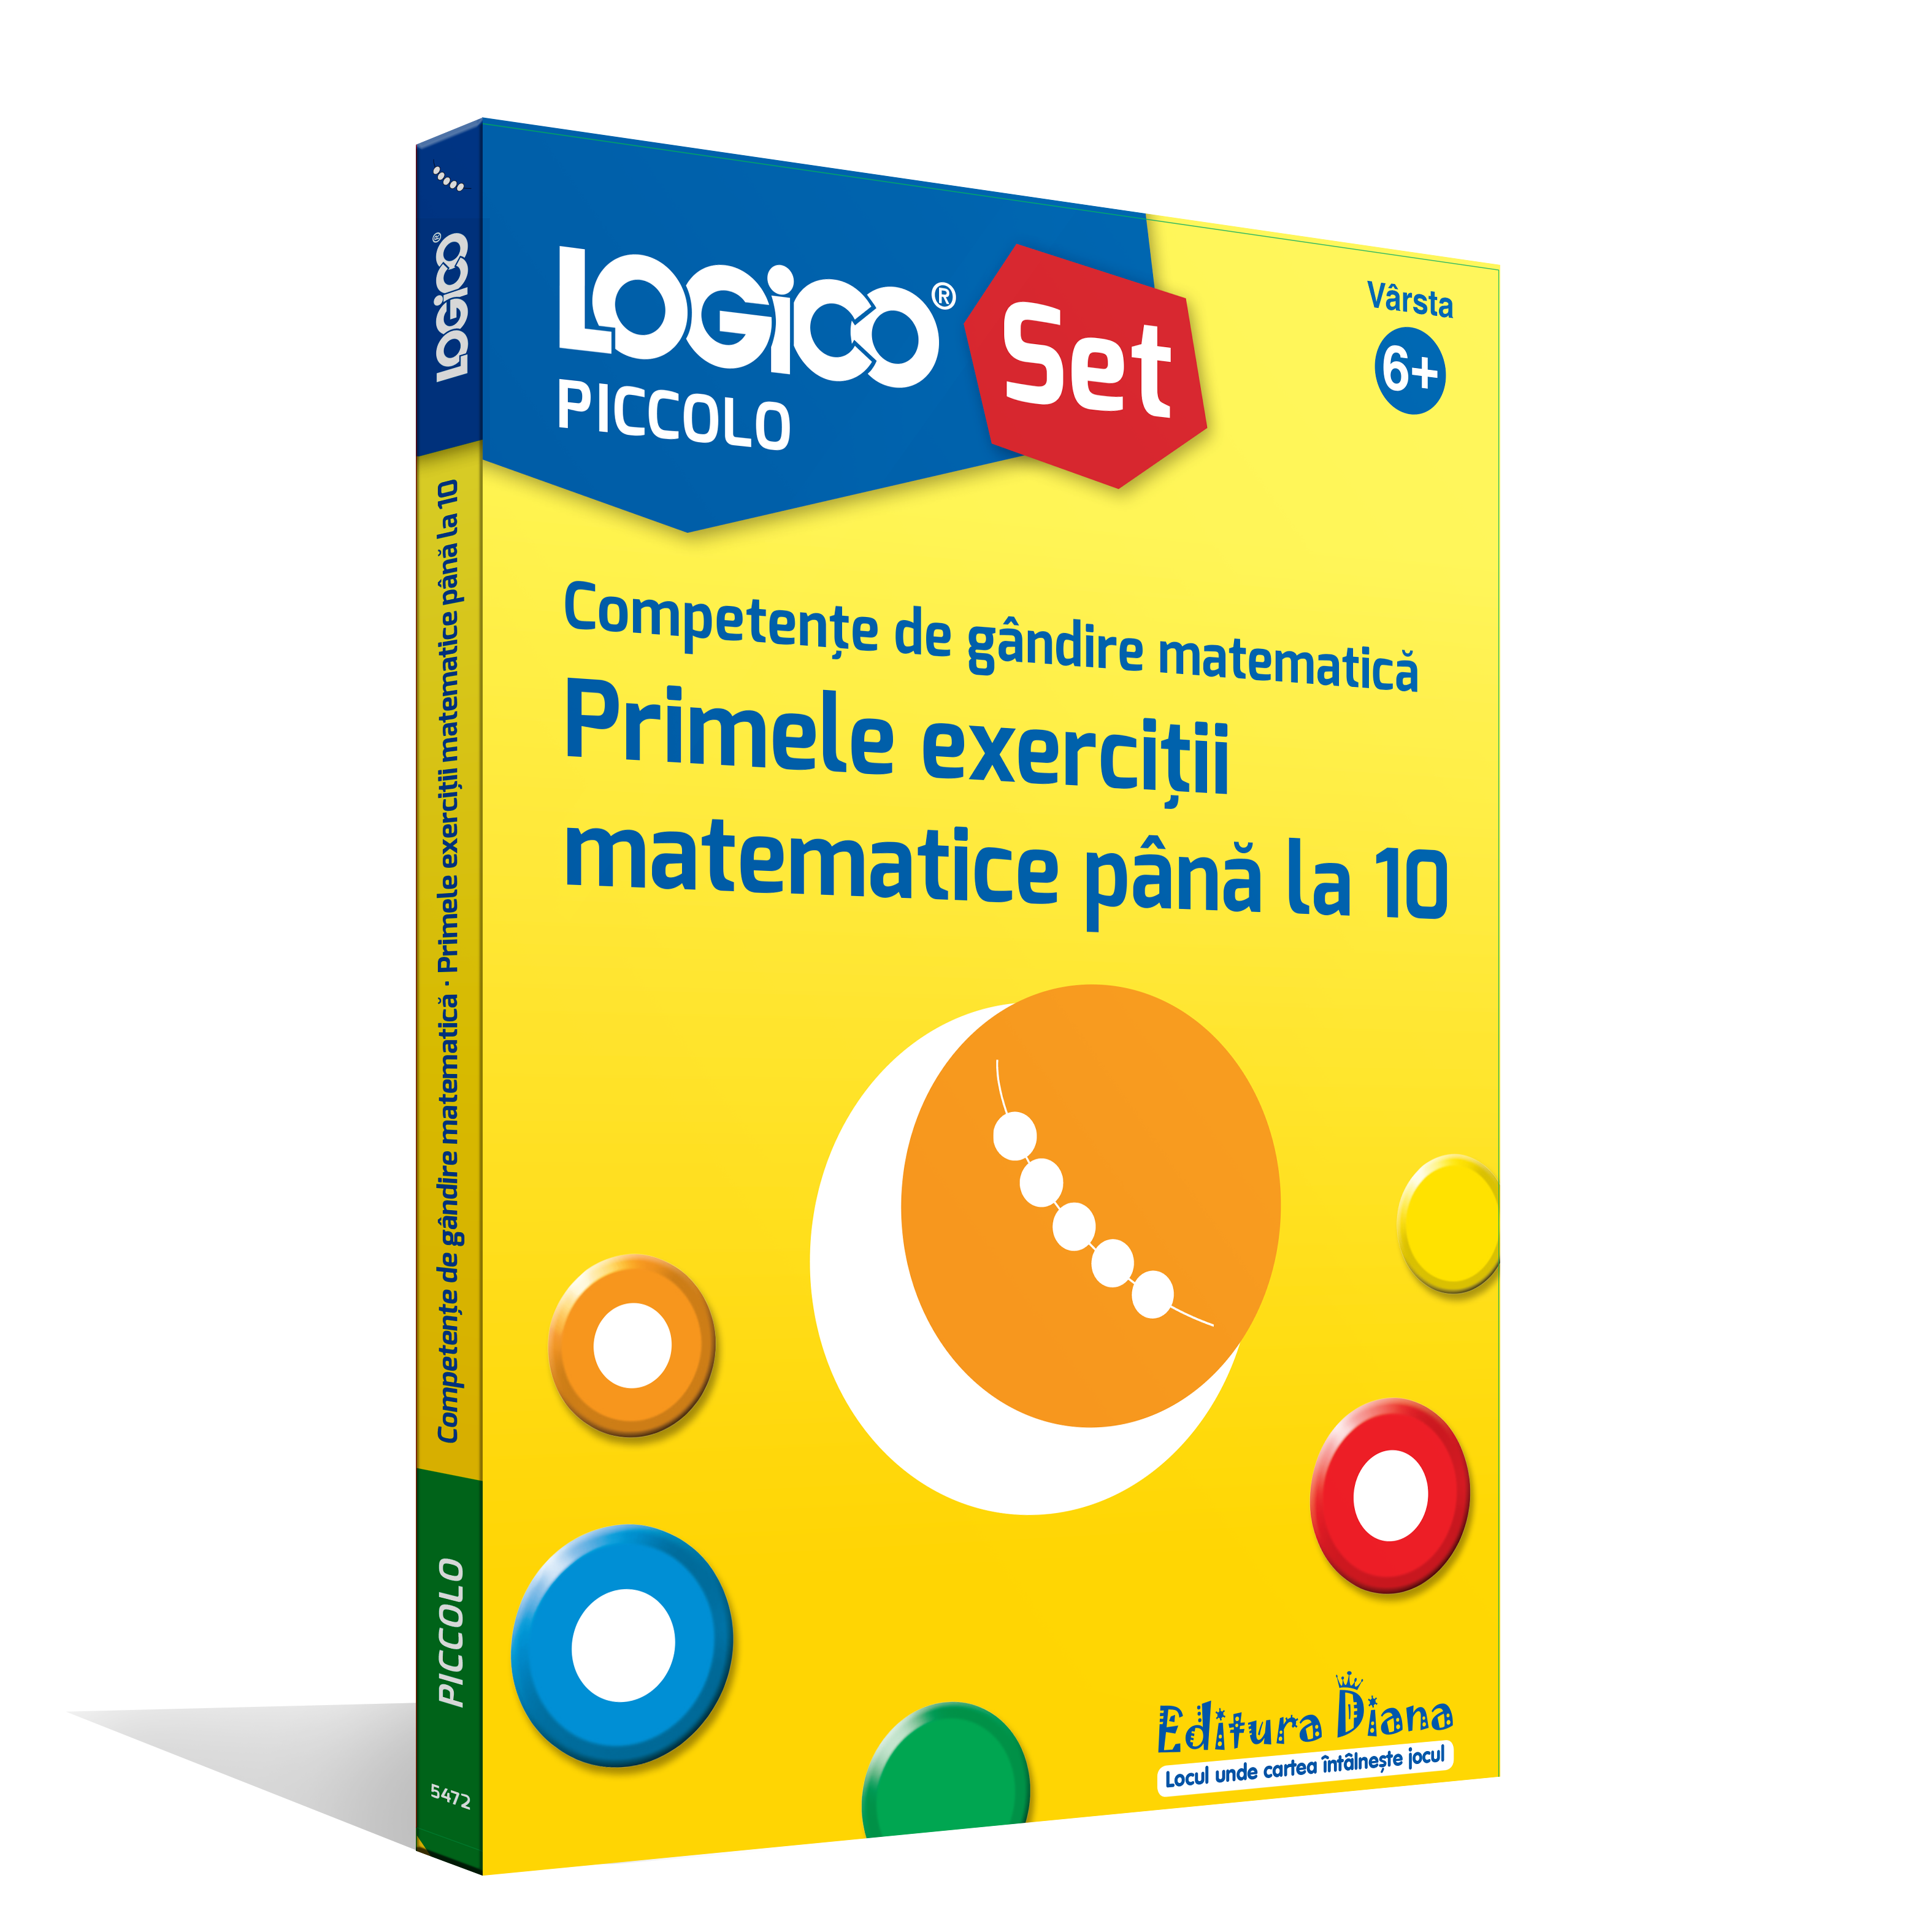 Vezi detalii pentru LOGICO PICCOLO - Competențe de gândire matematică. Primele exerciții matematice până la 10 (6+)